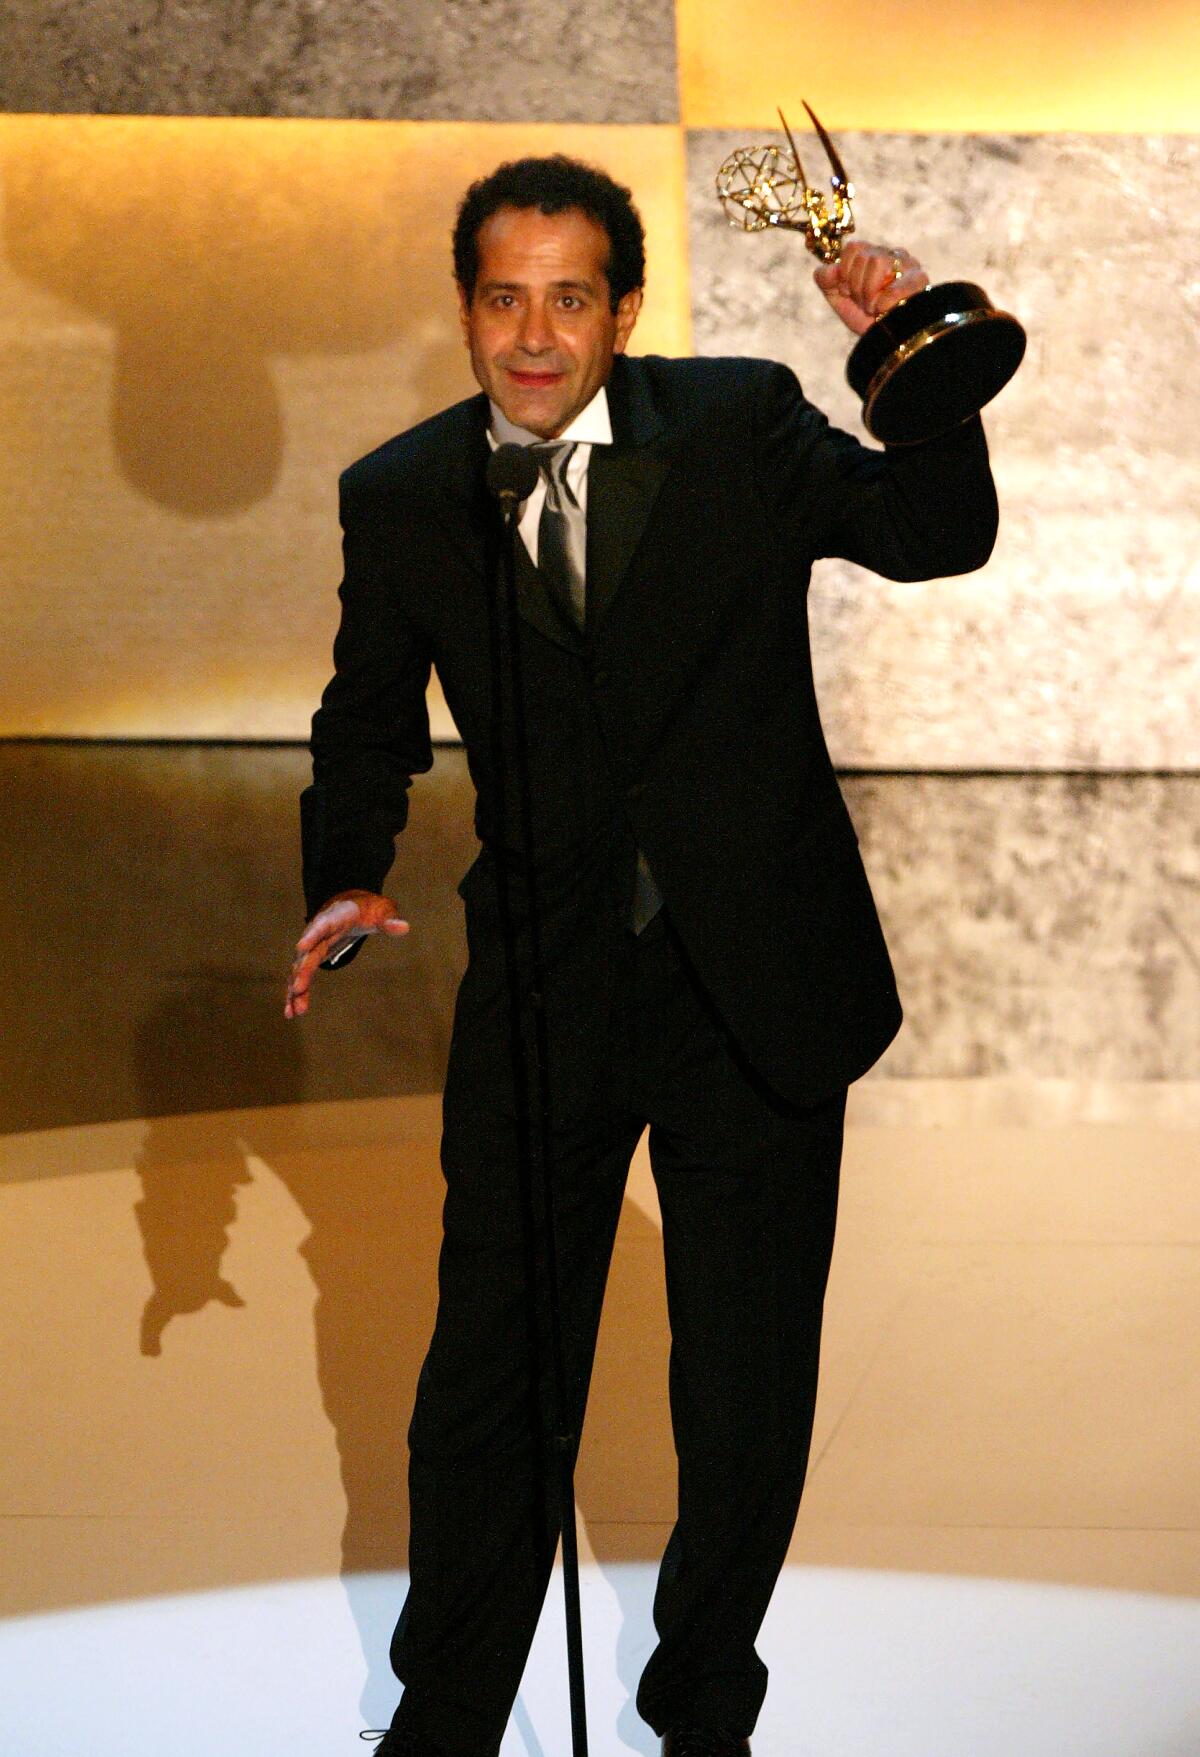 Tony Shalhoub hoists his Emmy Award onstage at the 2003 ceremony.